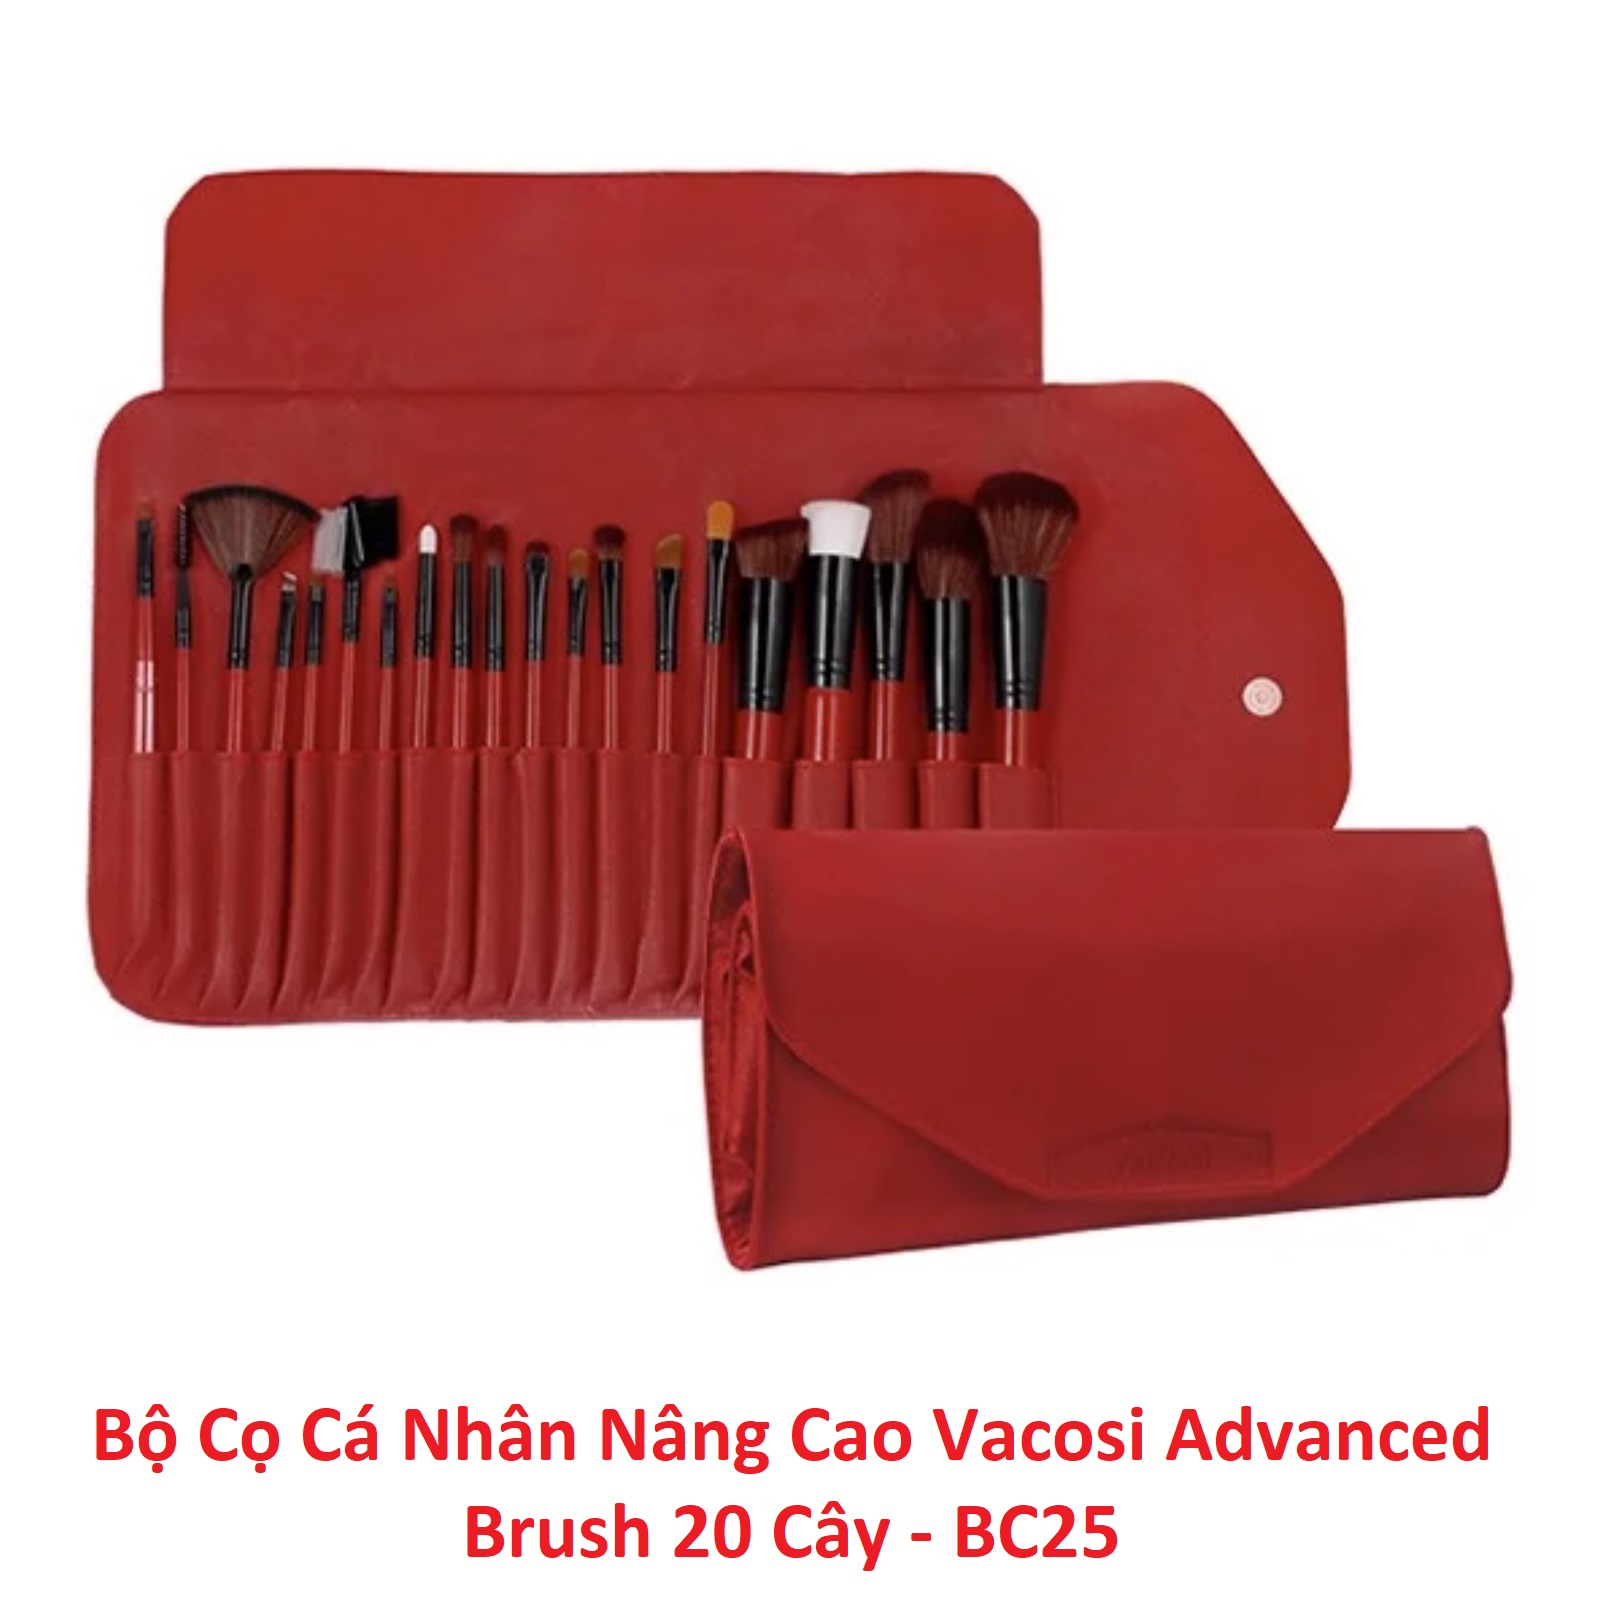 Bộ Cọ Vacosi Advanced Brush - Bộ 20 Cây - BC25 1